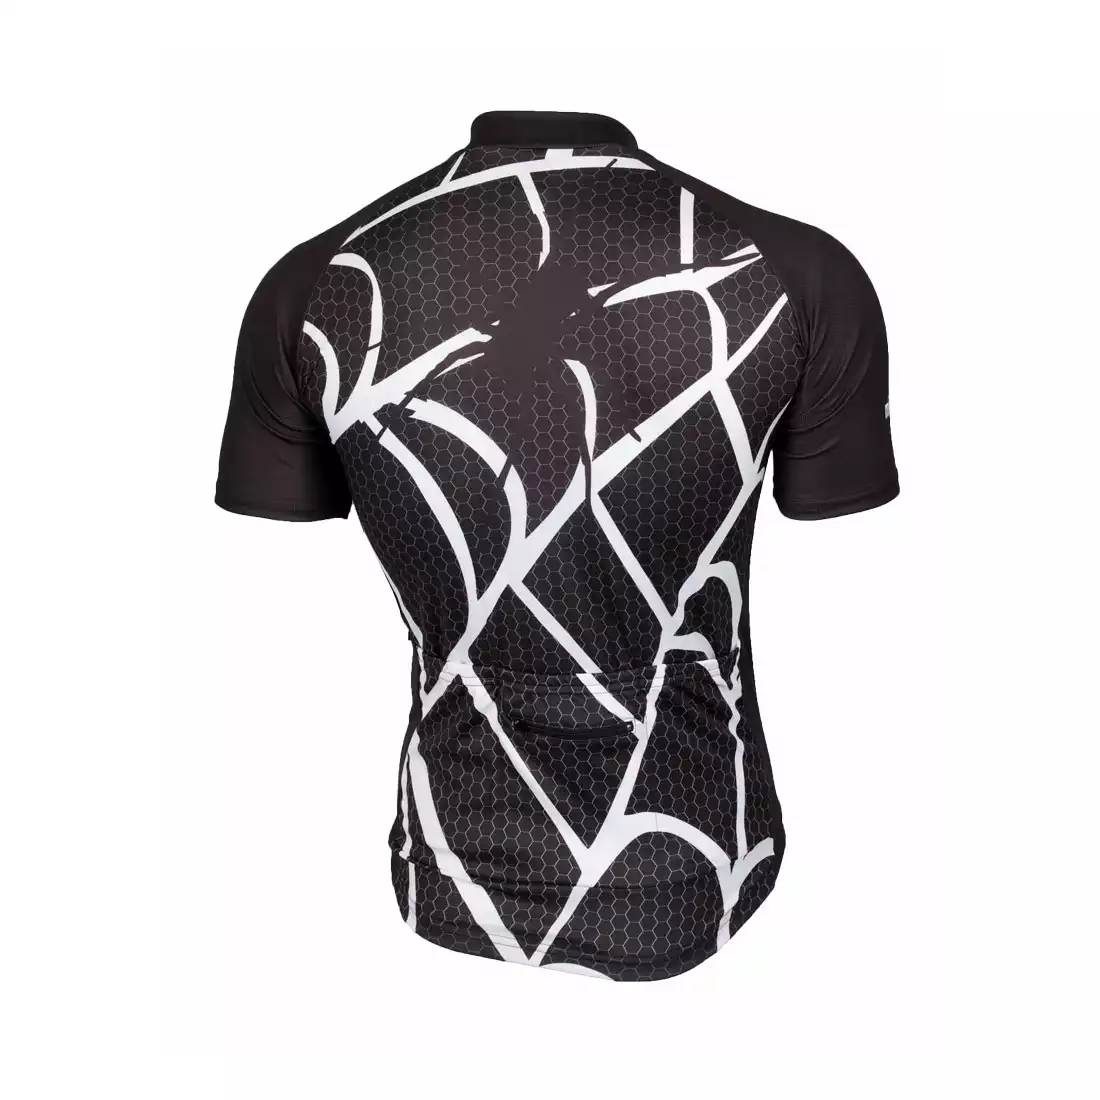 MikeSPORT DESIGN SPIDERWEB koszulka rowerowa męska